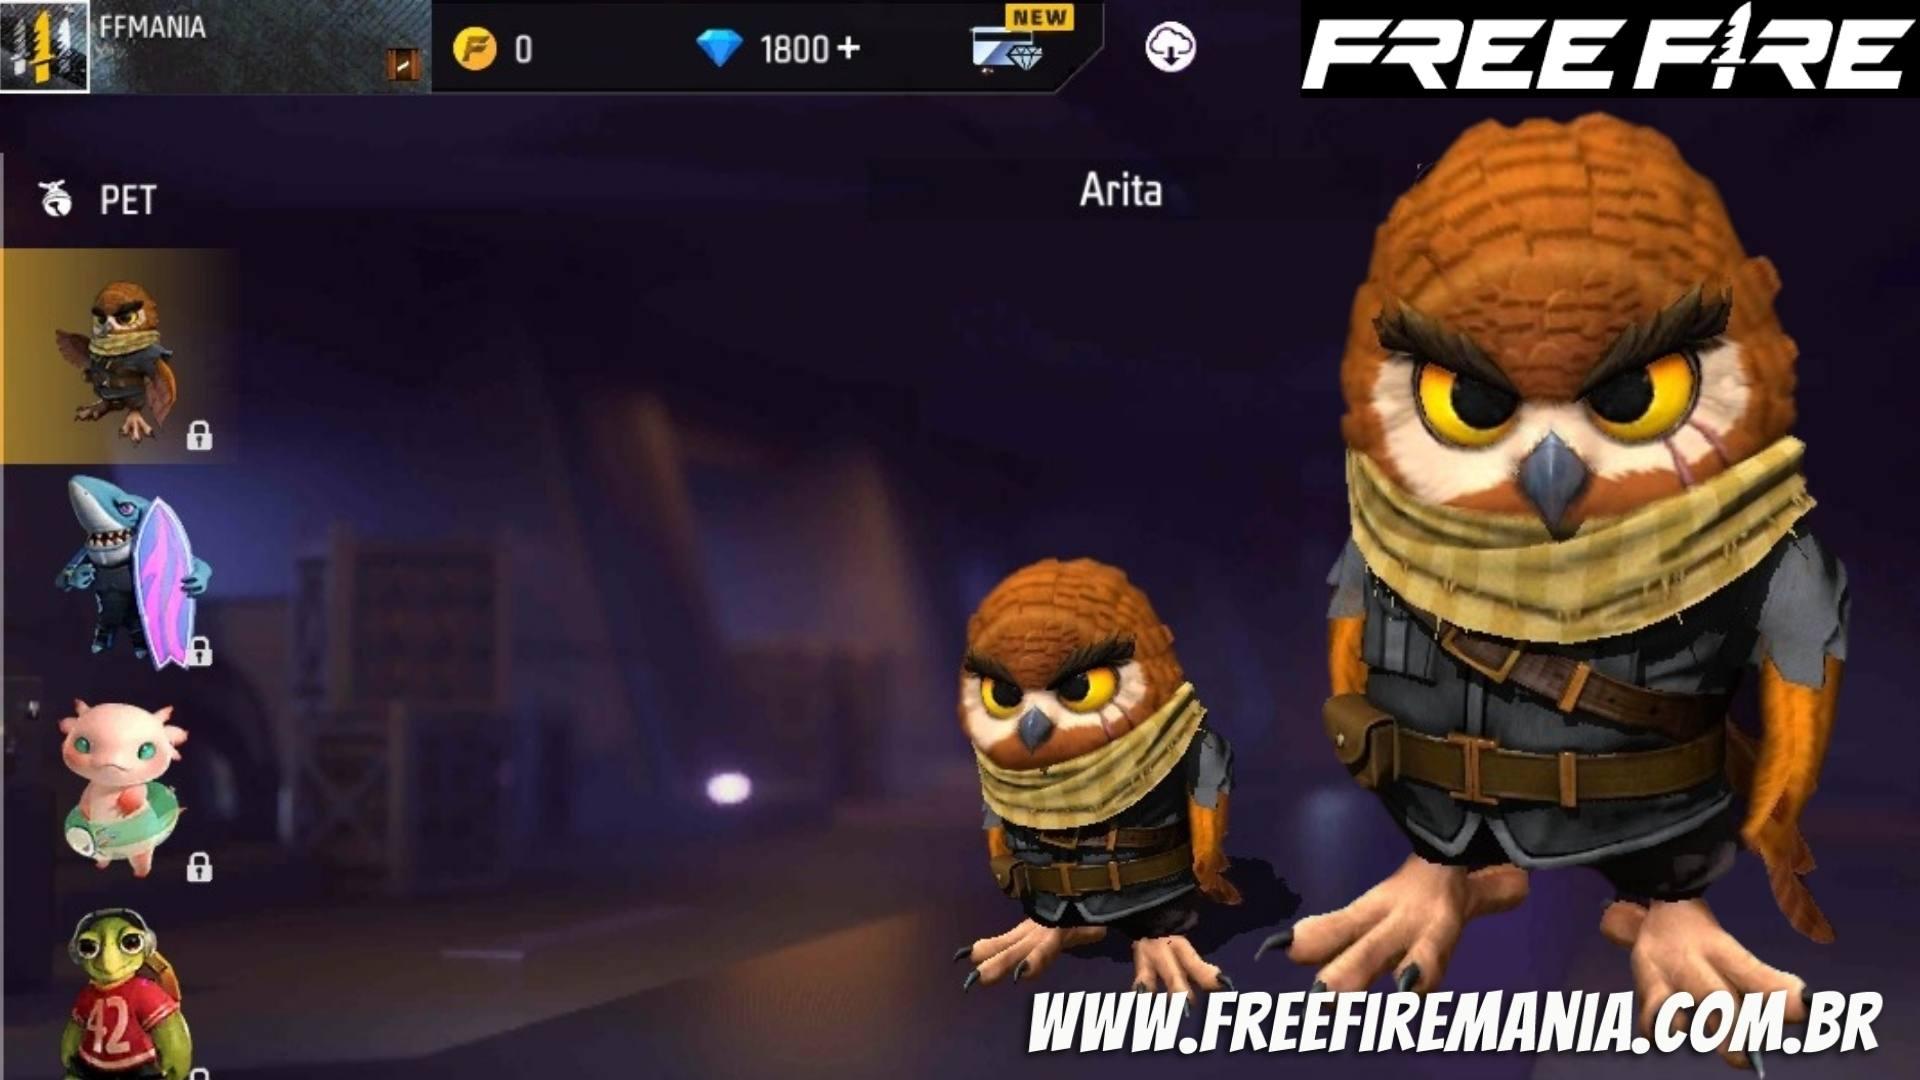 Hewan peliharaan baru Free Fire adalah Burung Hantu bernama Arita; Semua yang perlu Anda ketahui